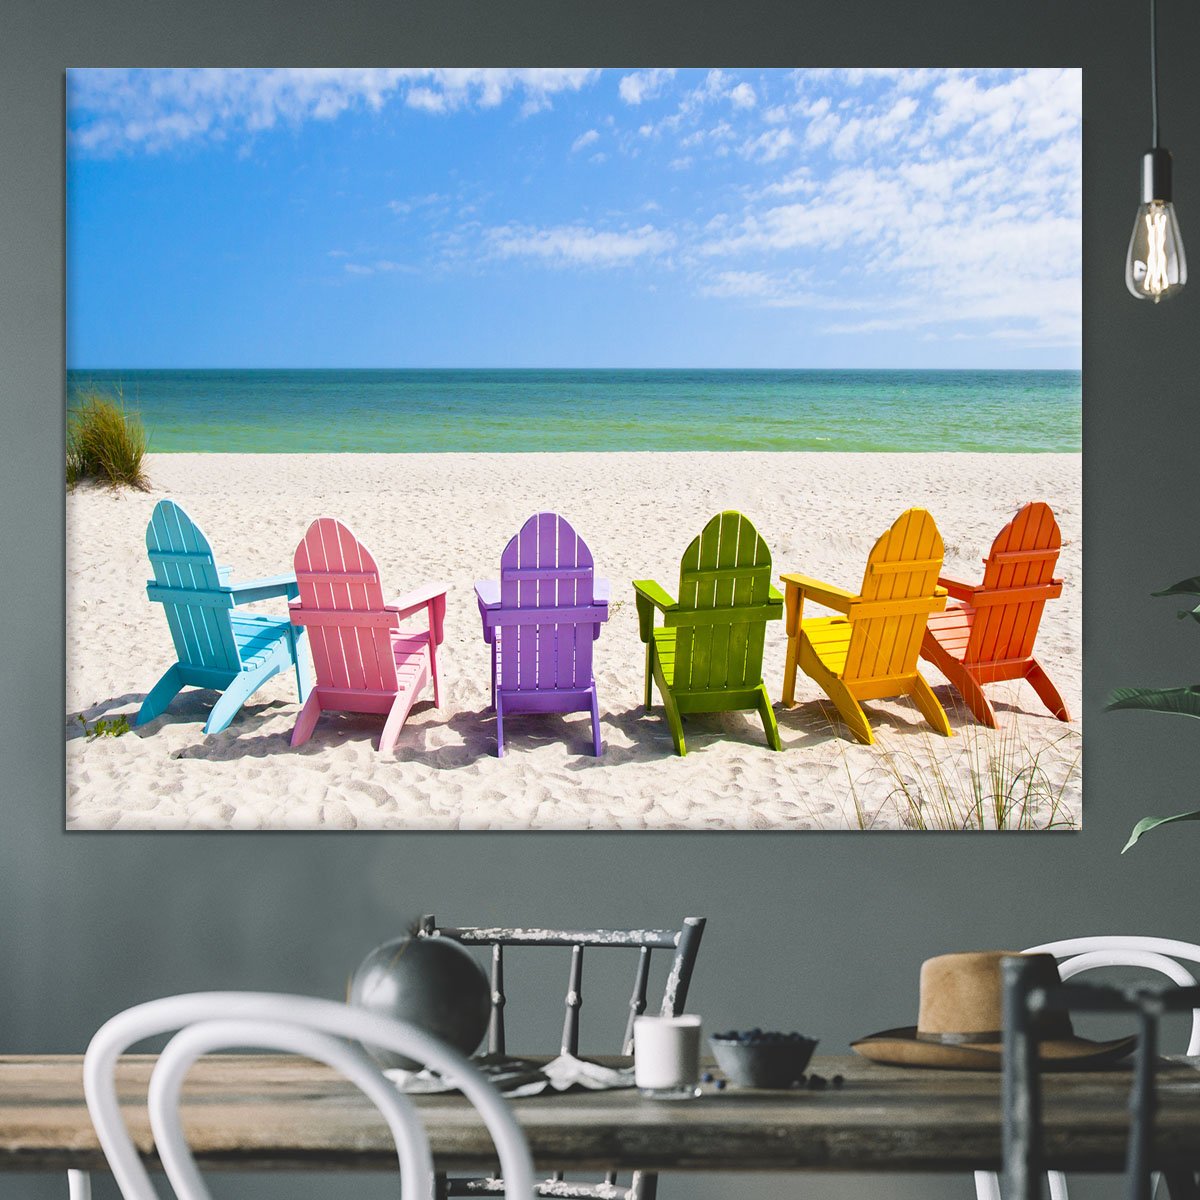 Beach Chairs on a Sun Beach Canvas Print or Poster